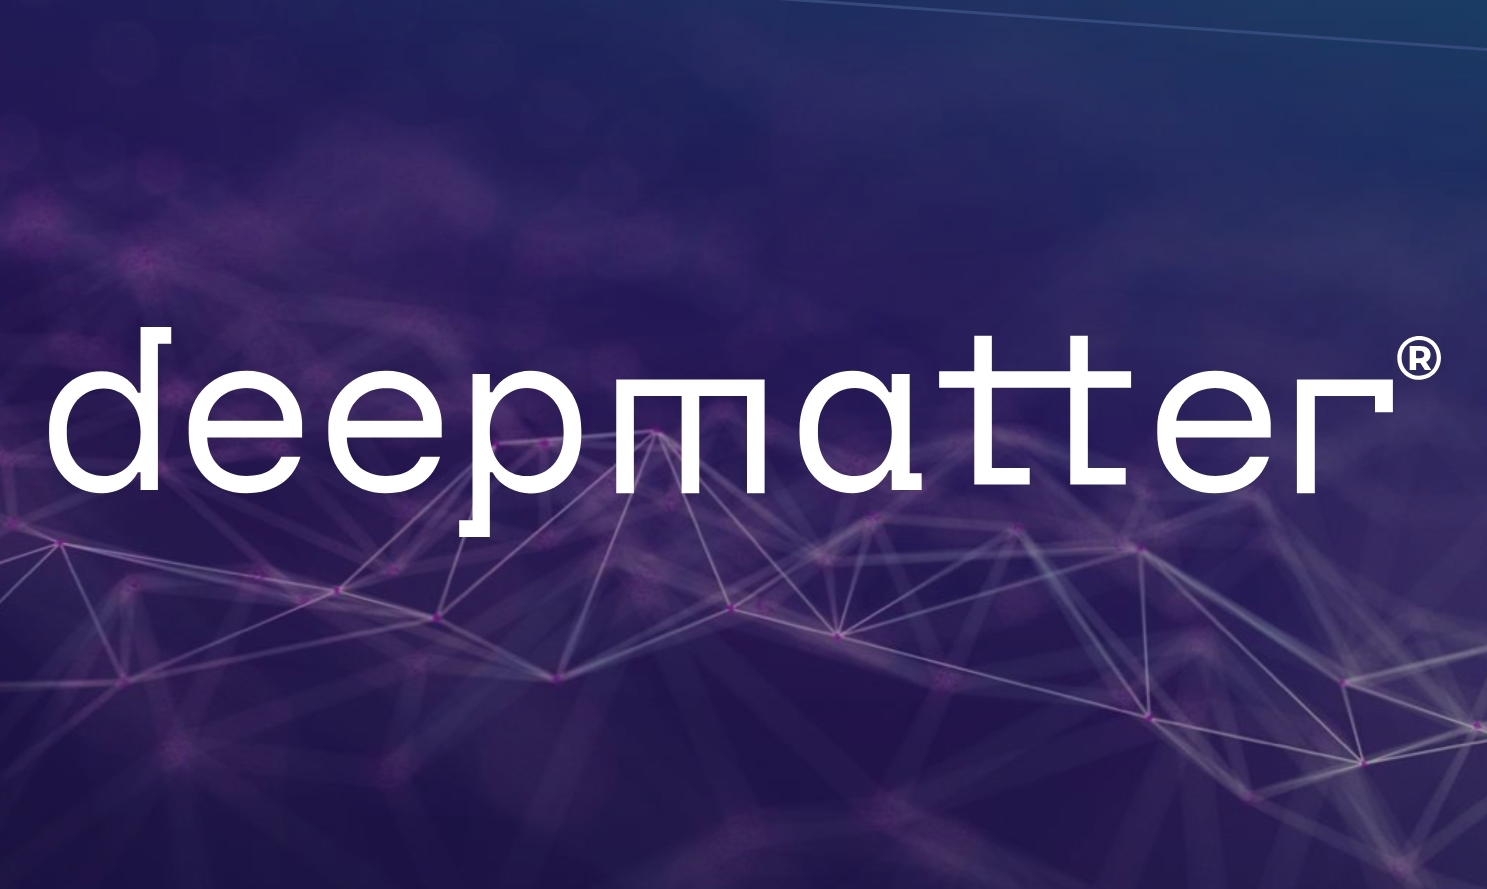 DeepMatter Group Limited